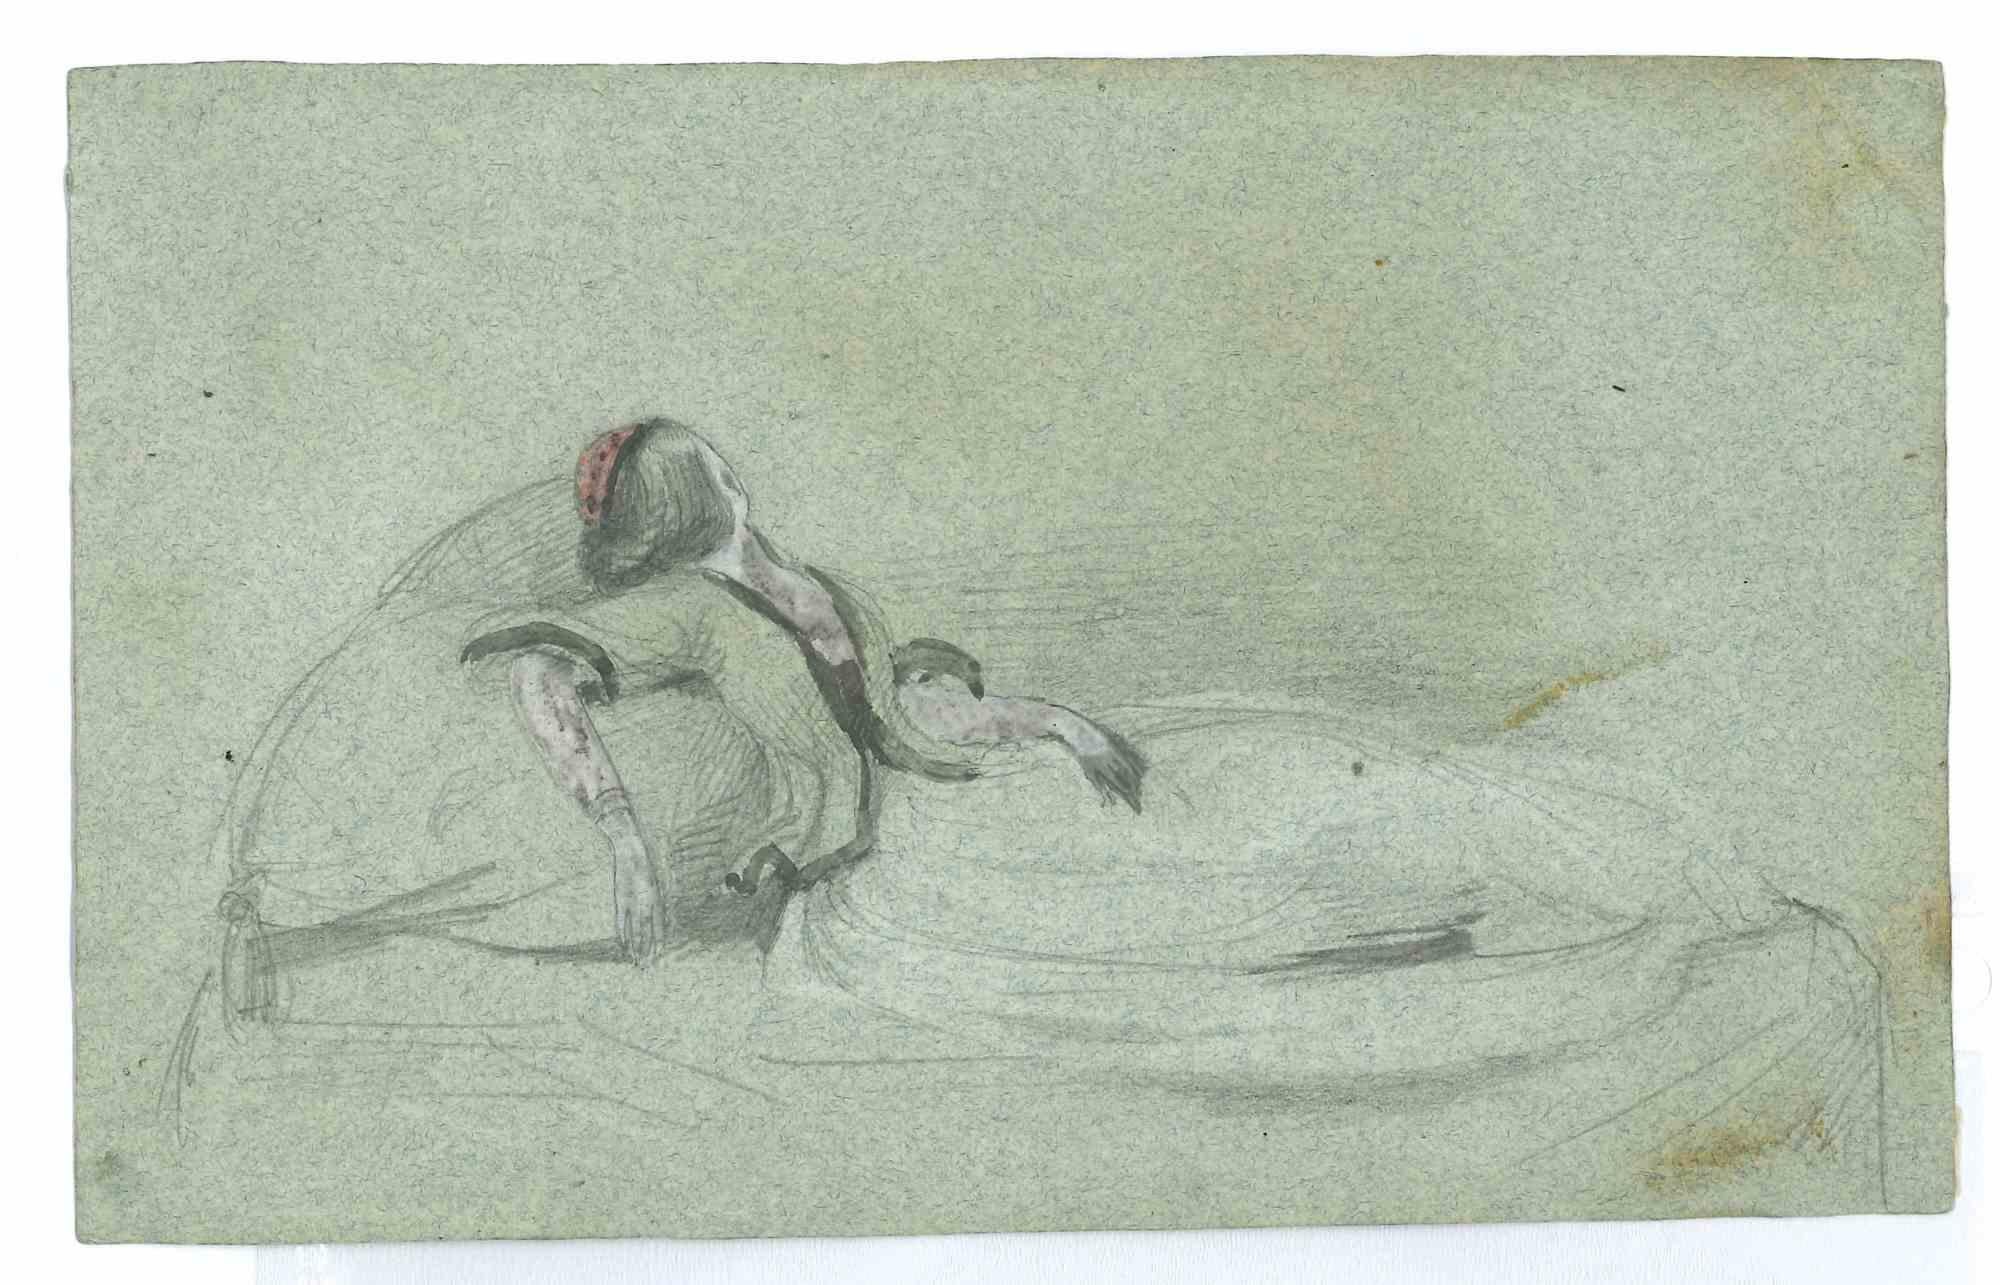 Femme rêvant sur l'eau est un dessin original au crayon et à l'aquarelle sur carton réalisé par Achille Devezie (1802--1857) dans les années 1830.

En bonnes conditions.

L'œuvre d'art est dépeinte à l'aide de traits délicats et fins et est